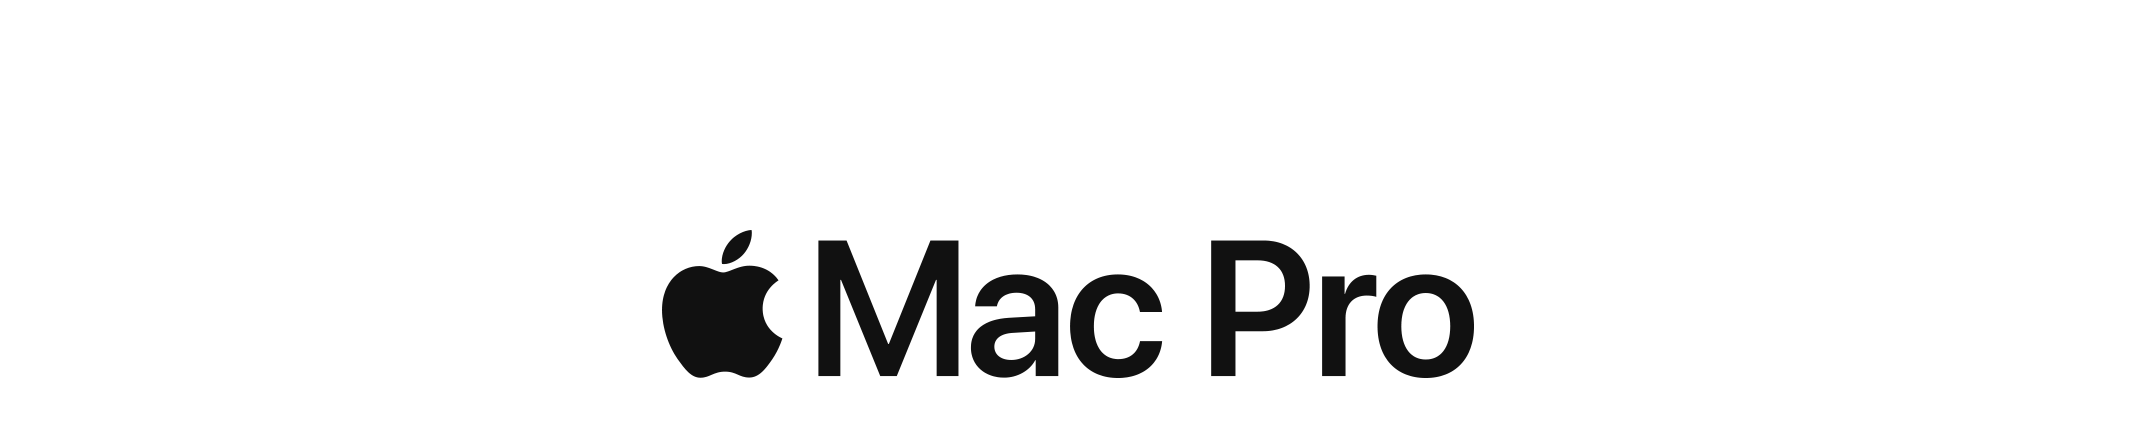 Comprar un Mac Pro